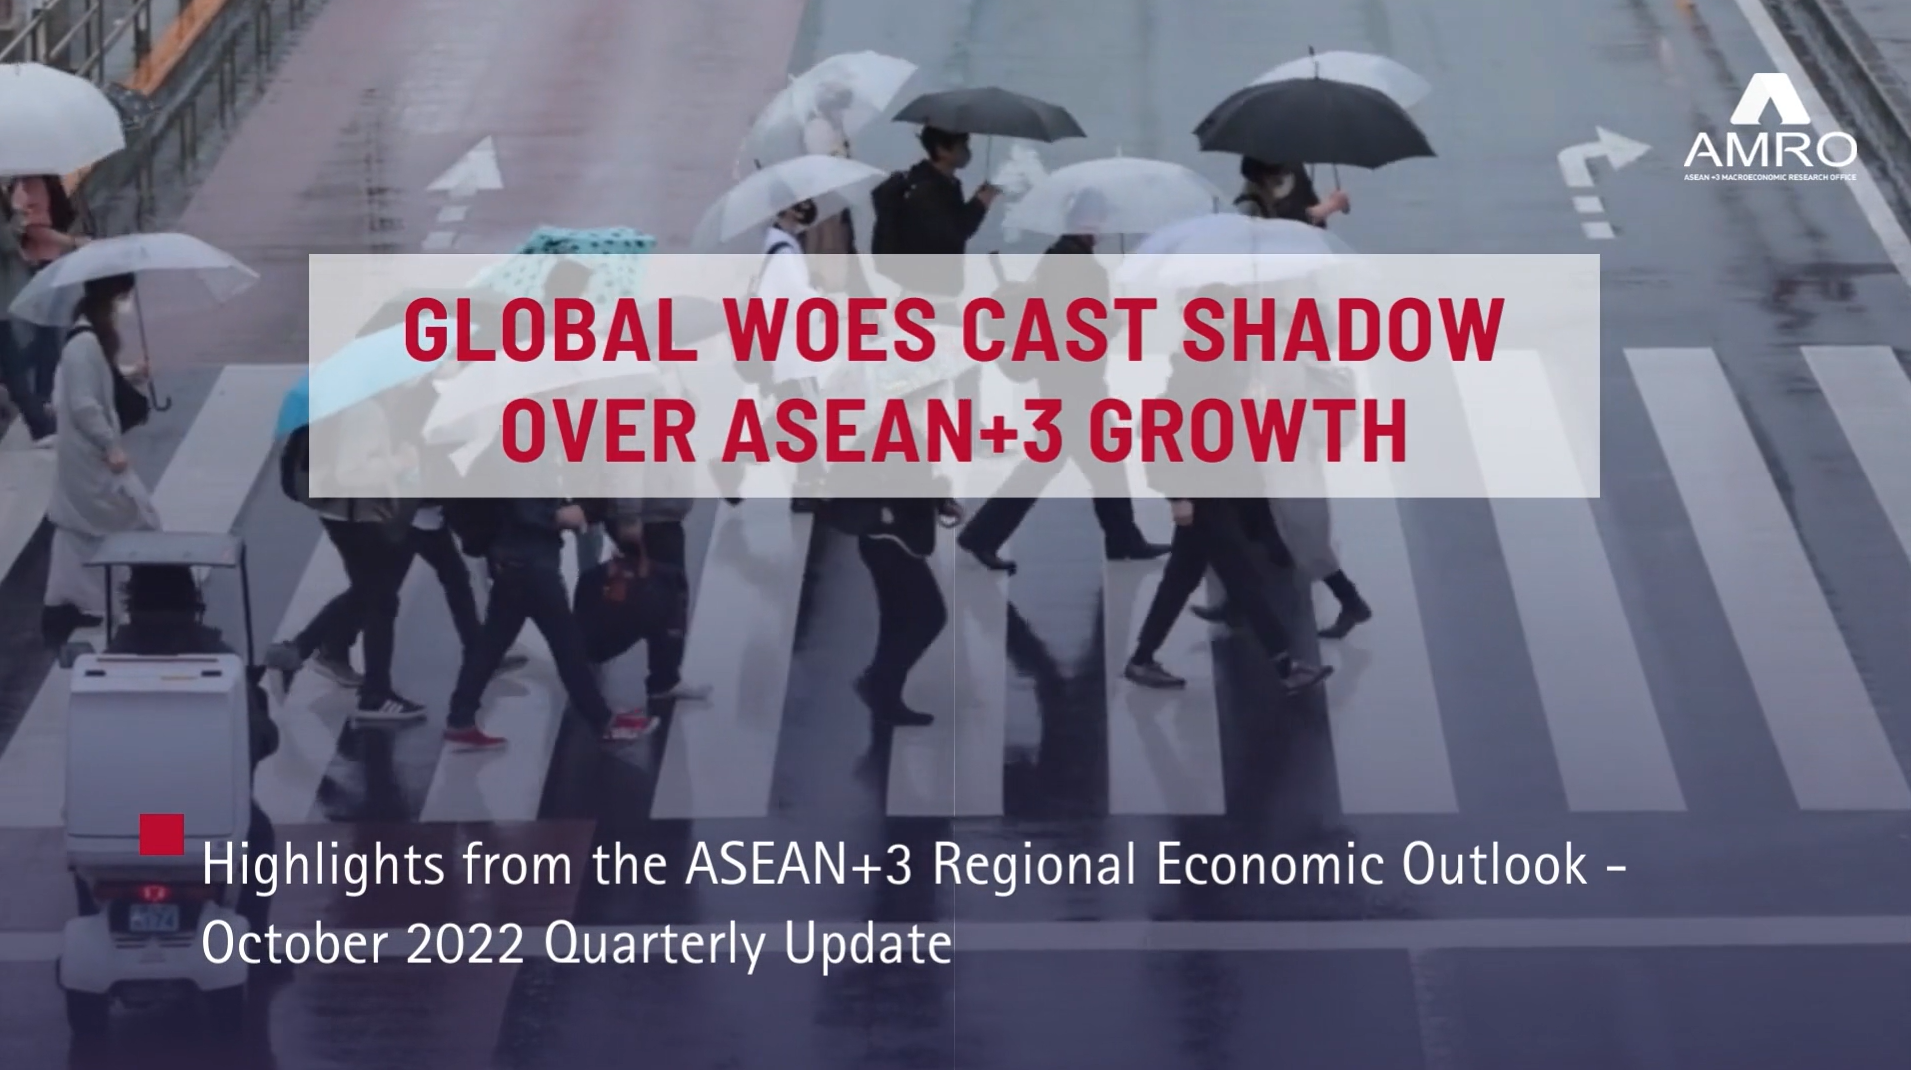 ASEAN+3 Regional Economic Outlook October Update 2022